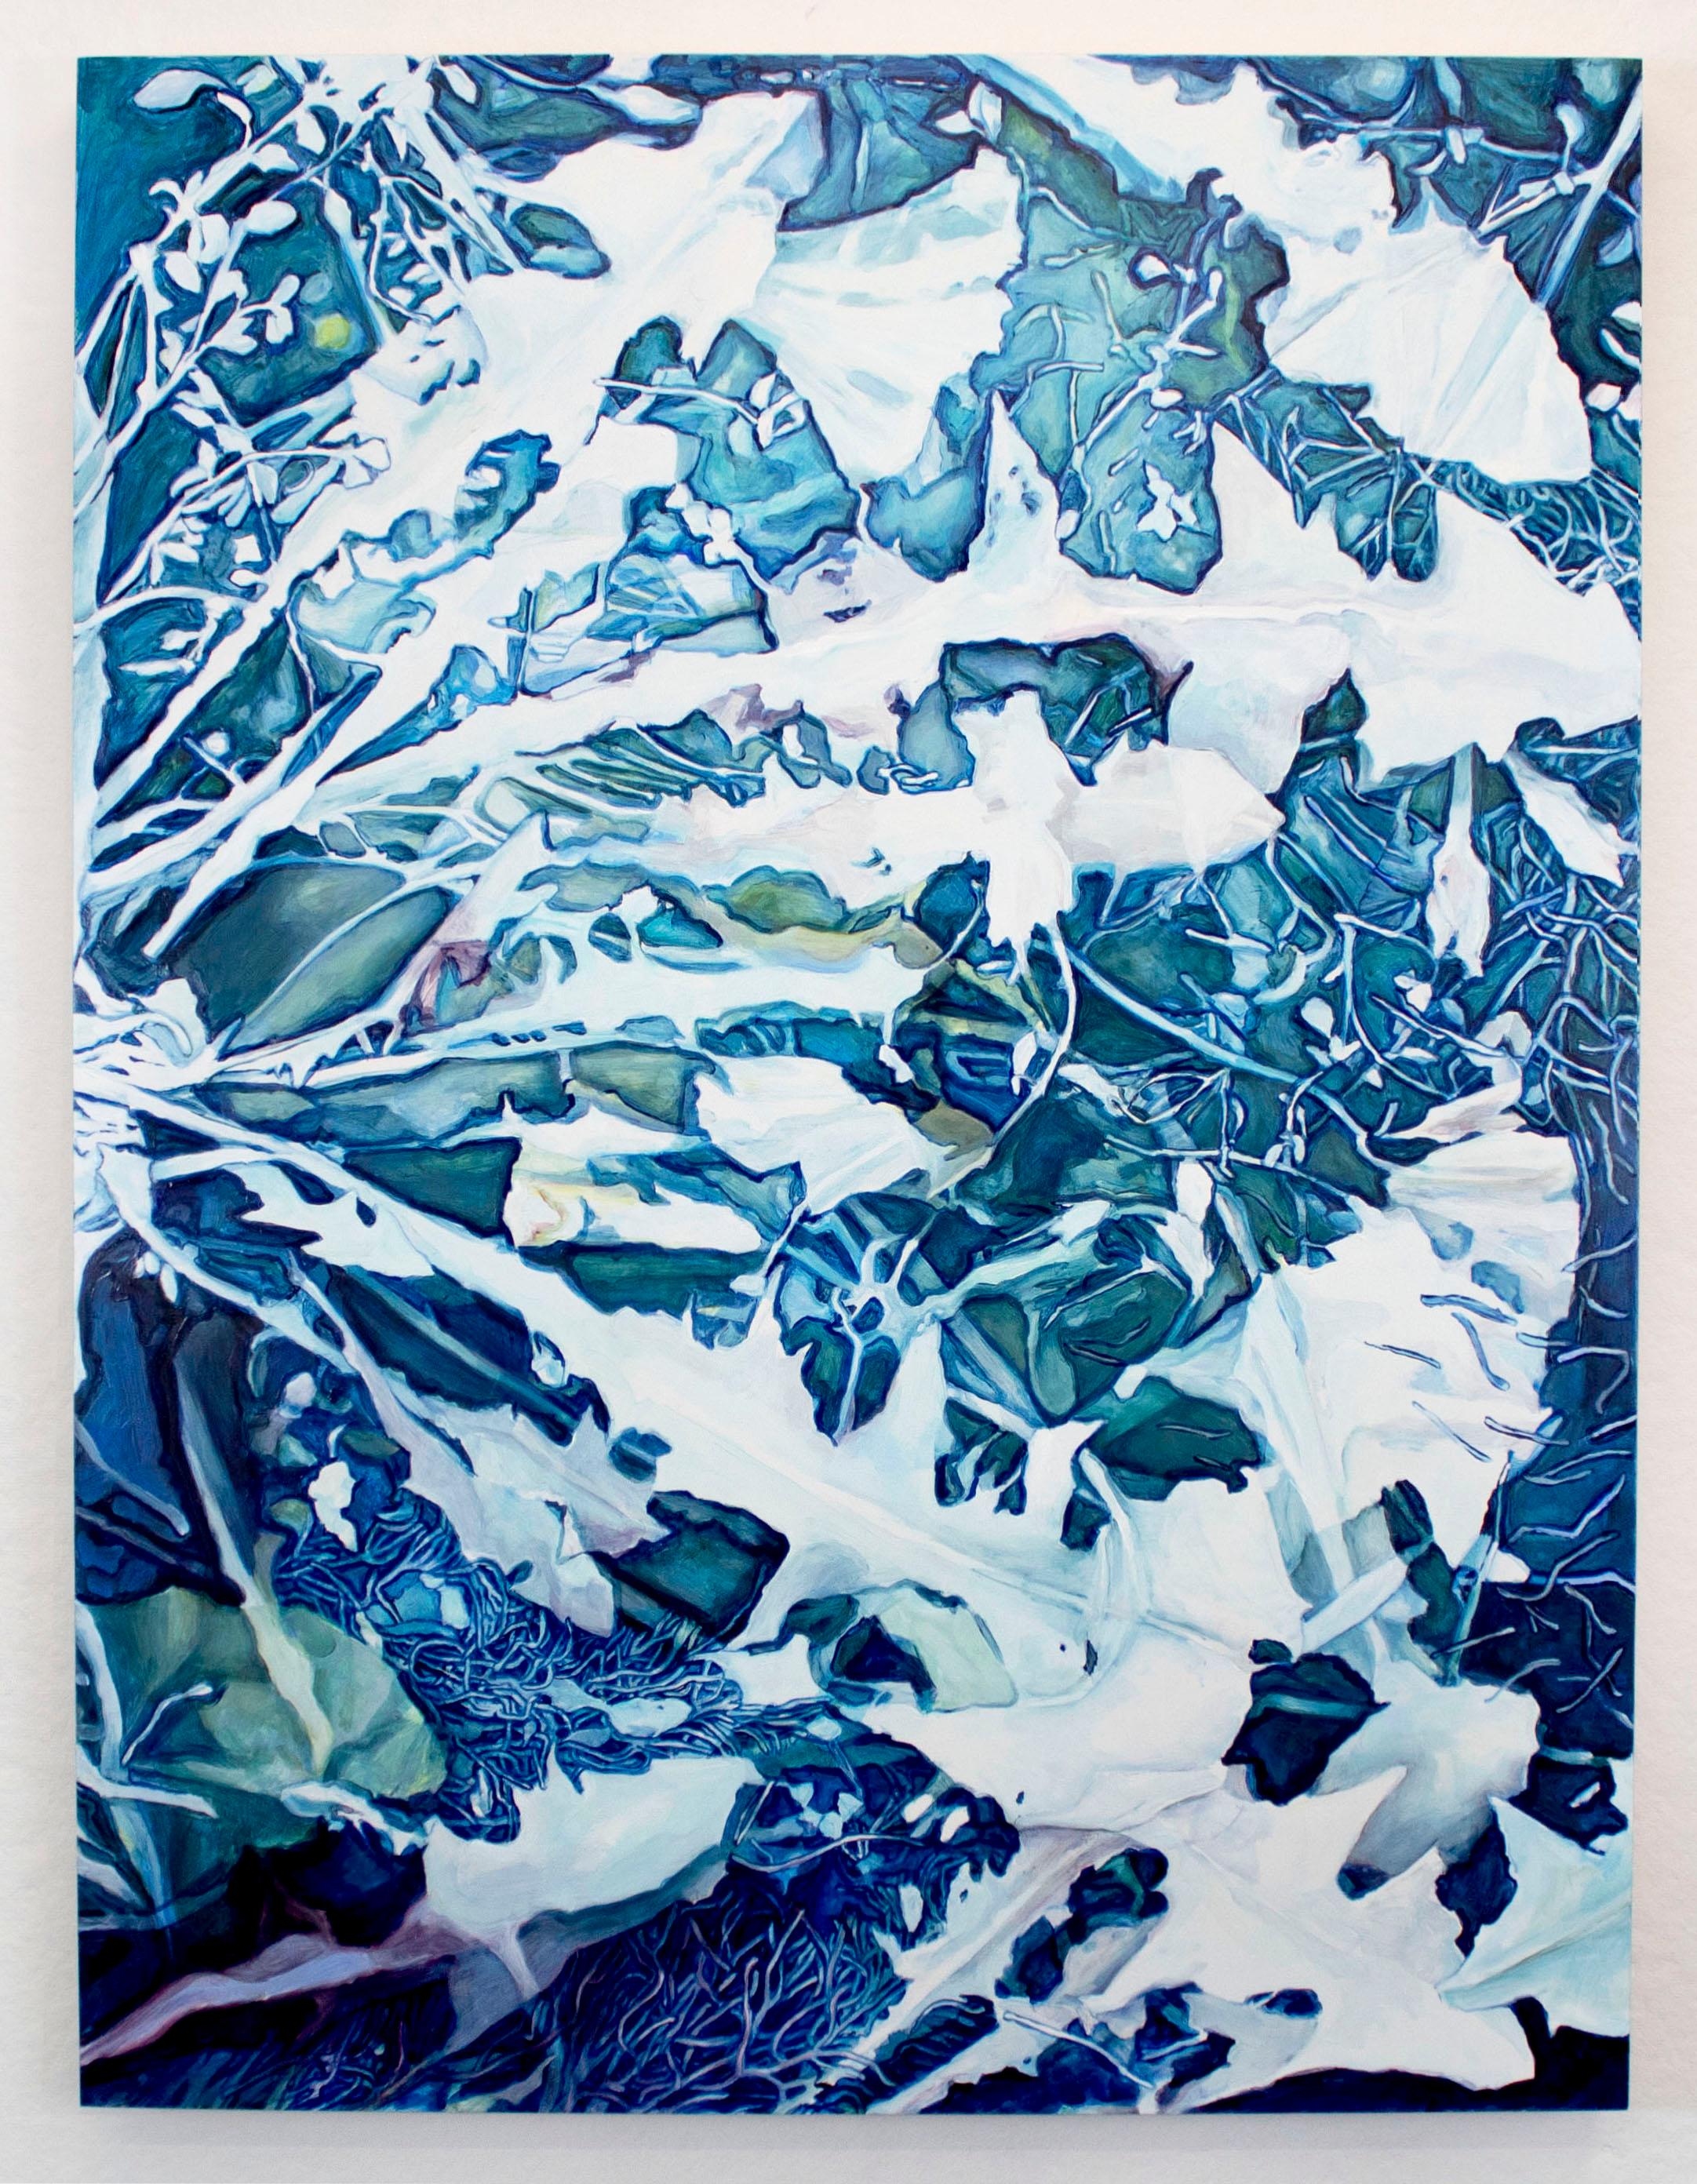 Triptyque de plantes luxuriantes bleues et blanches inspiré du cyanotype, avec des feuilles fantomatiques et superposées et des textures florales captivantes. Quantum Echoes, Triptyque (2022) par Amanda Besl. Huile sur planche.